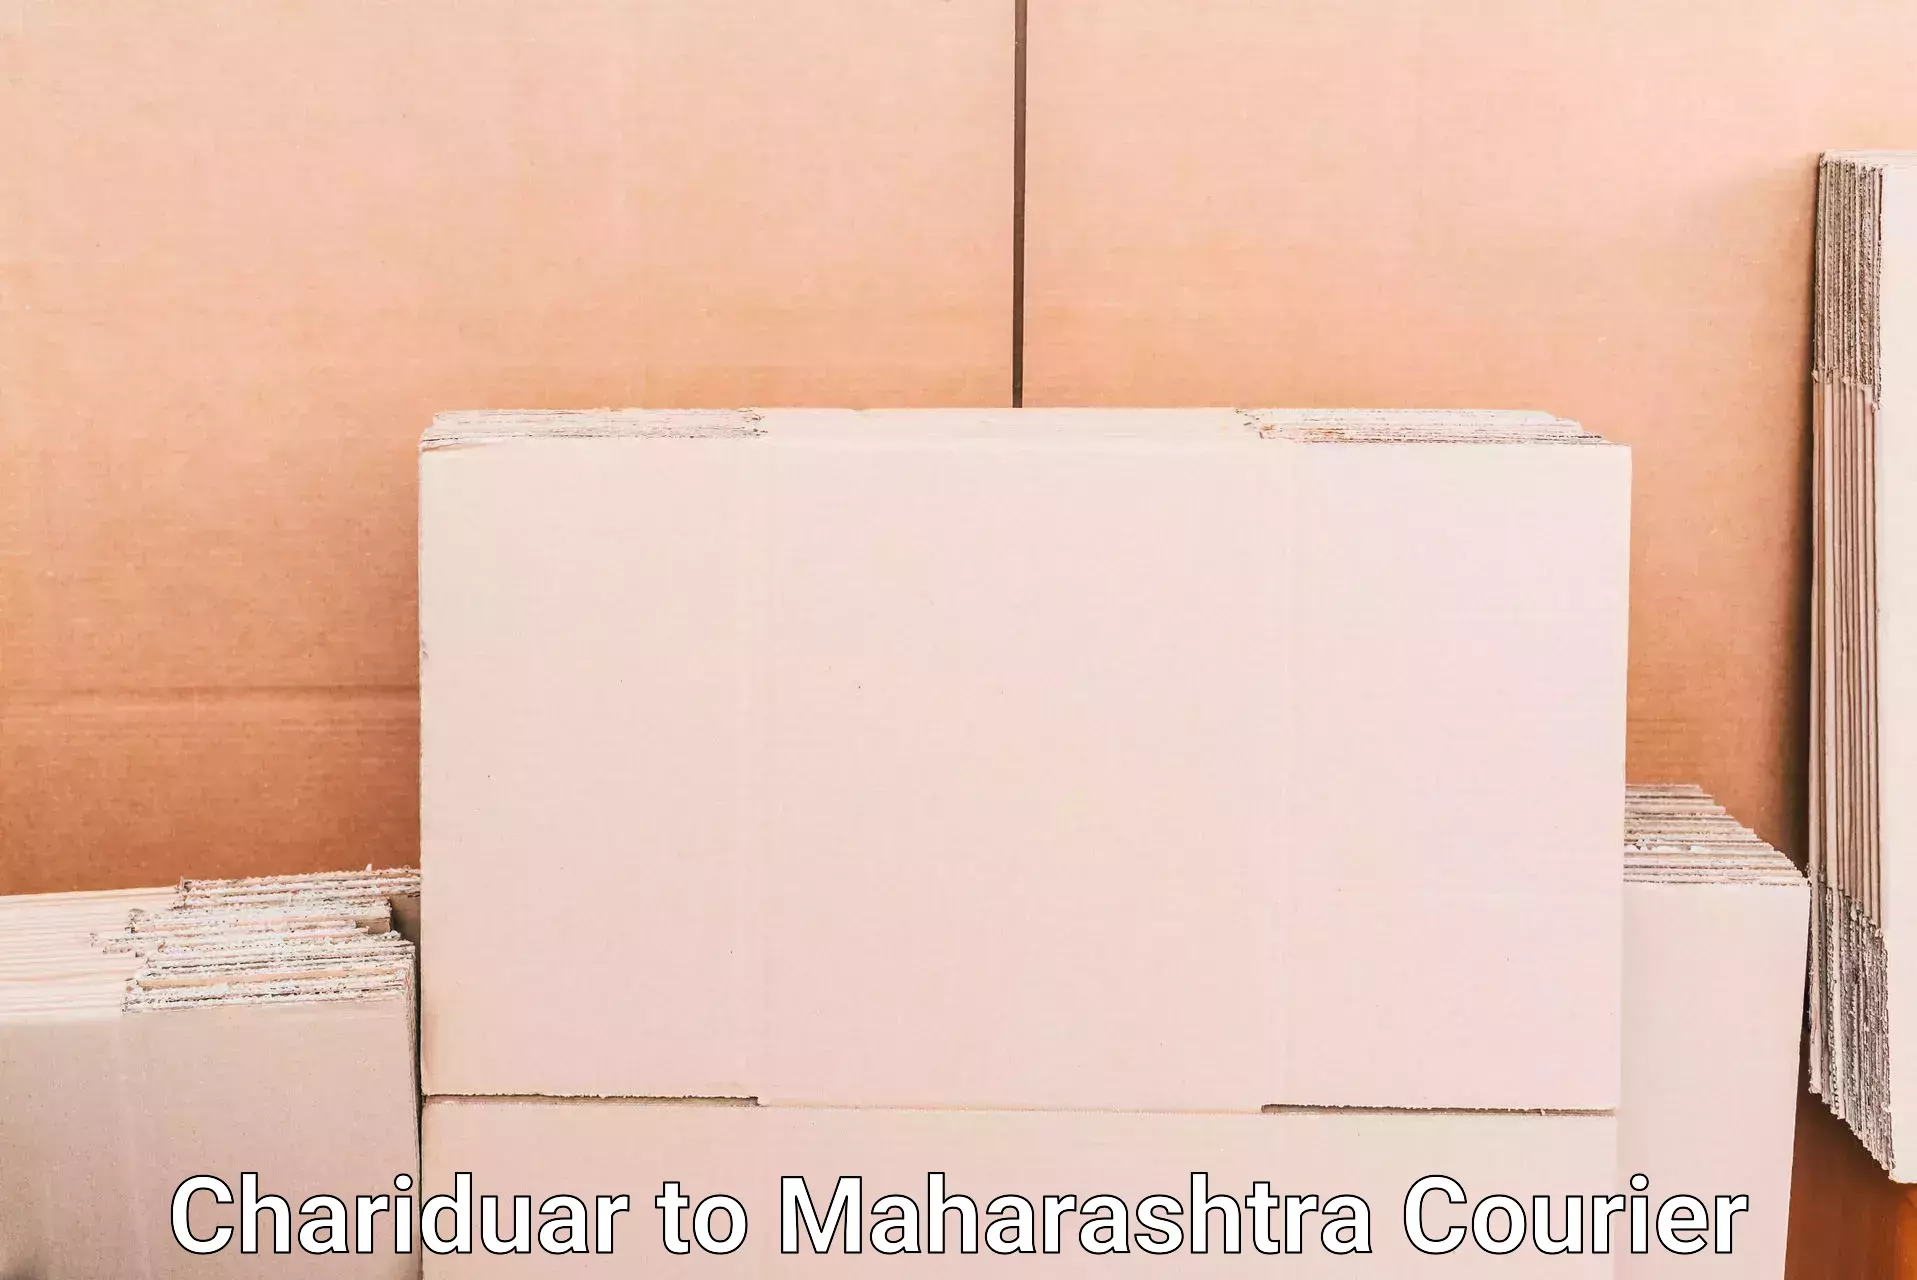 Luggage shipping service Chariduar to Mahabaleshwar